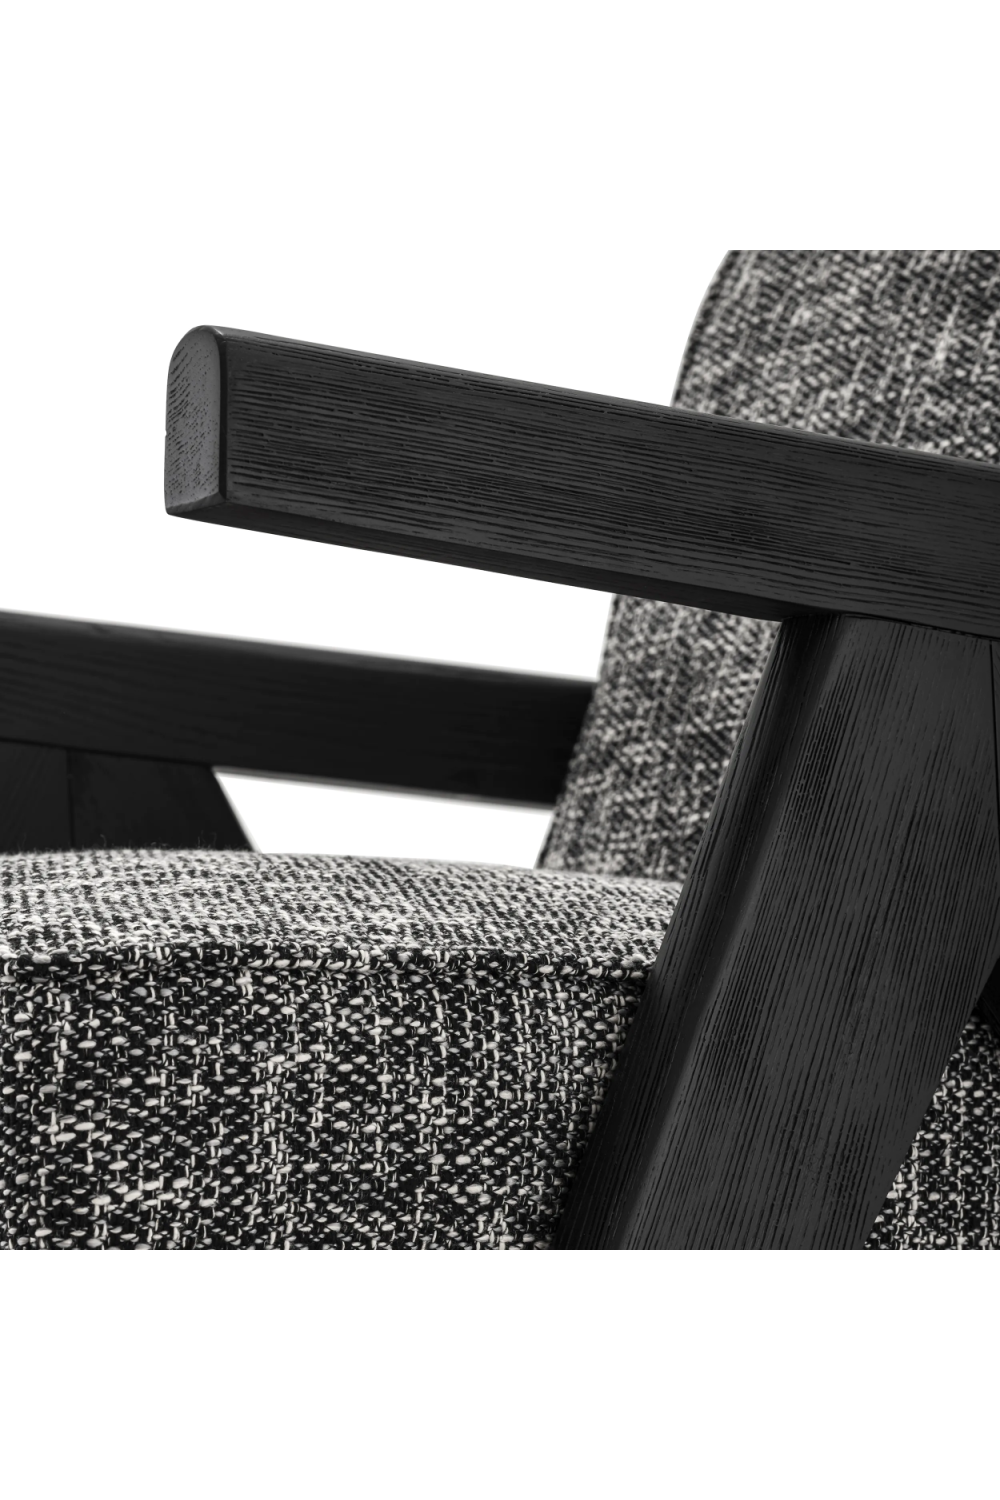 Black Vintage Minimalist Lounge Chair | Eichholtz Greta | Oroa.com